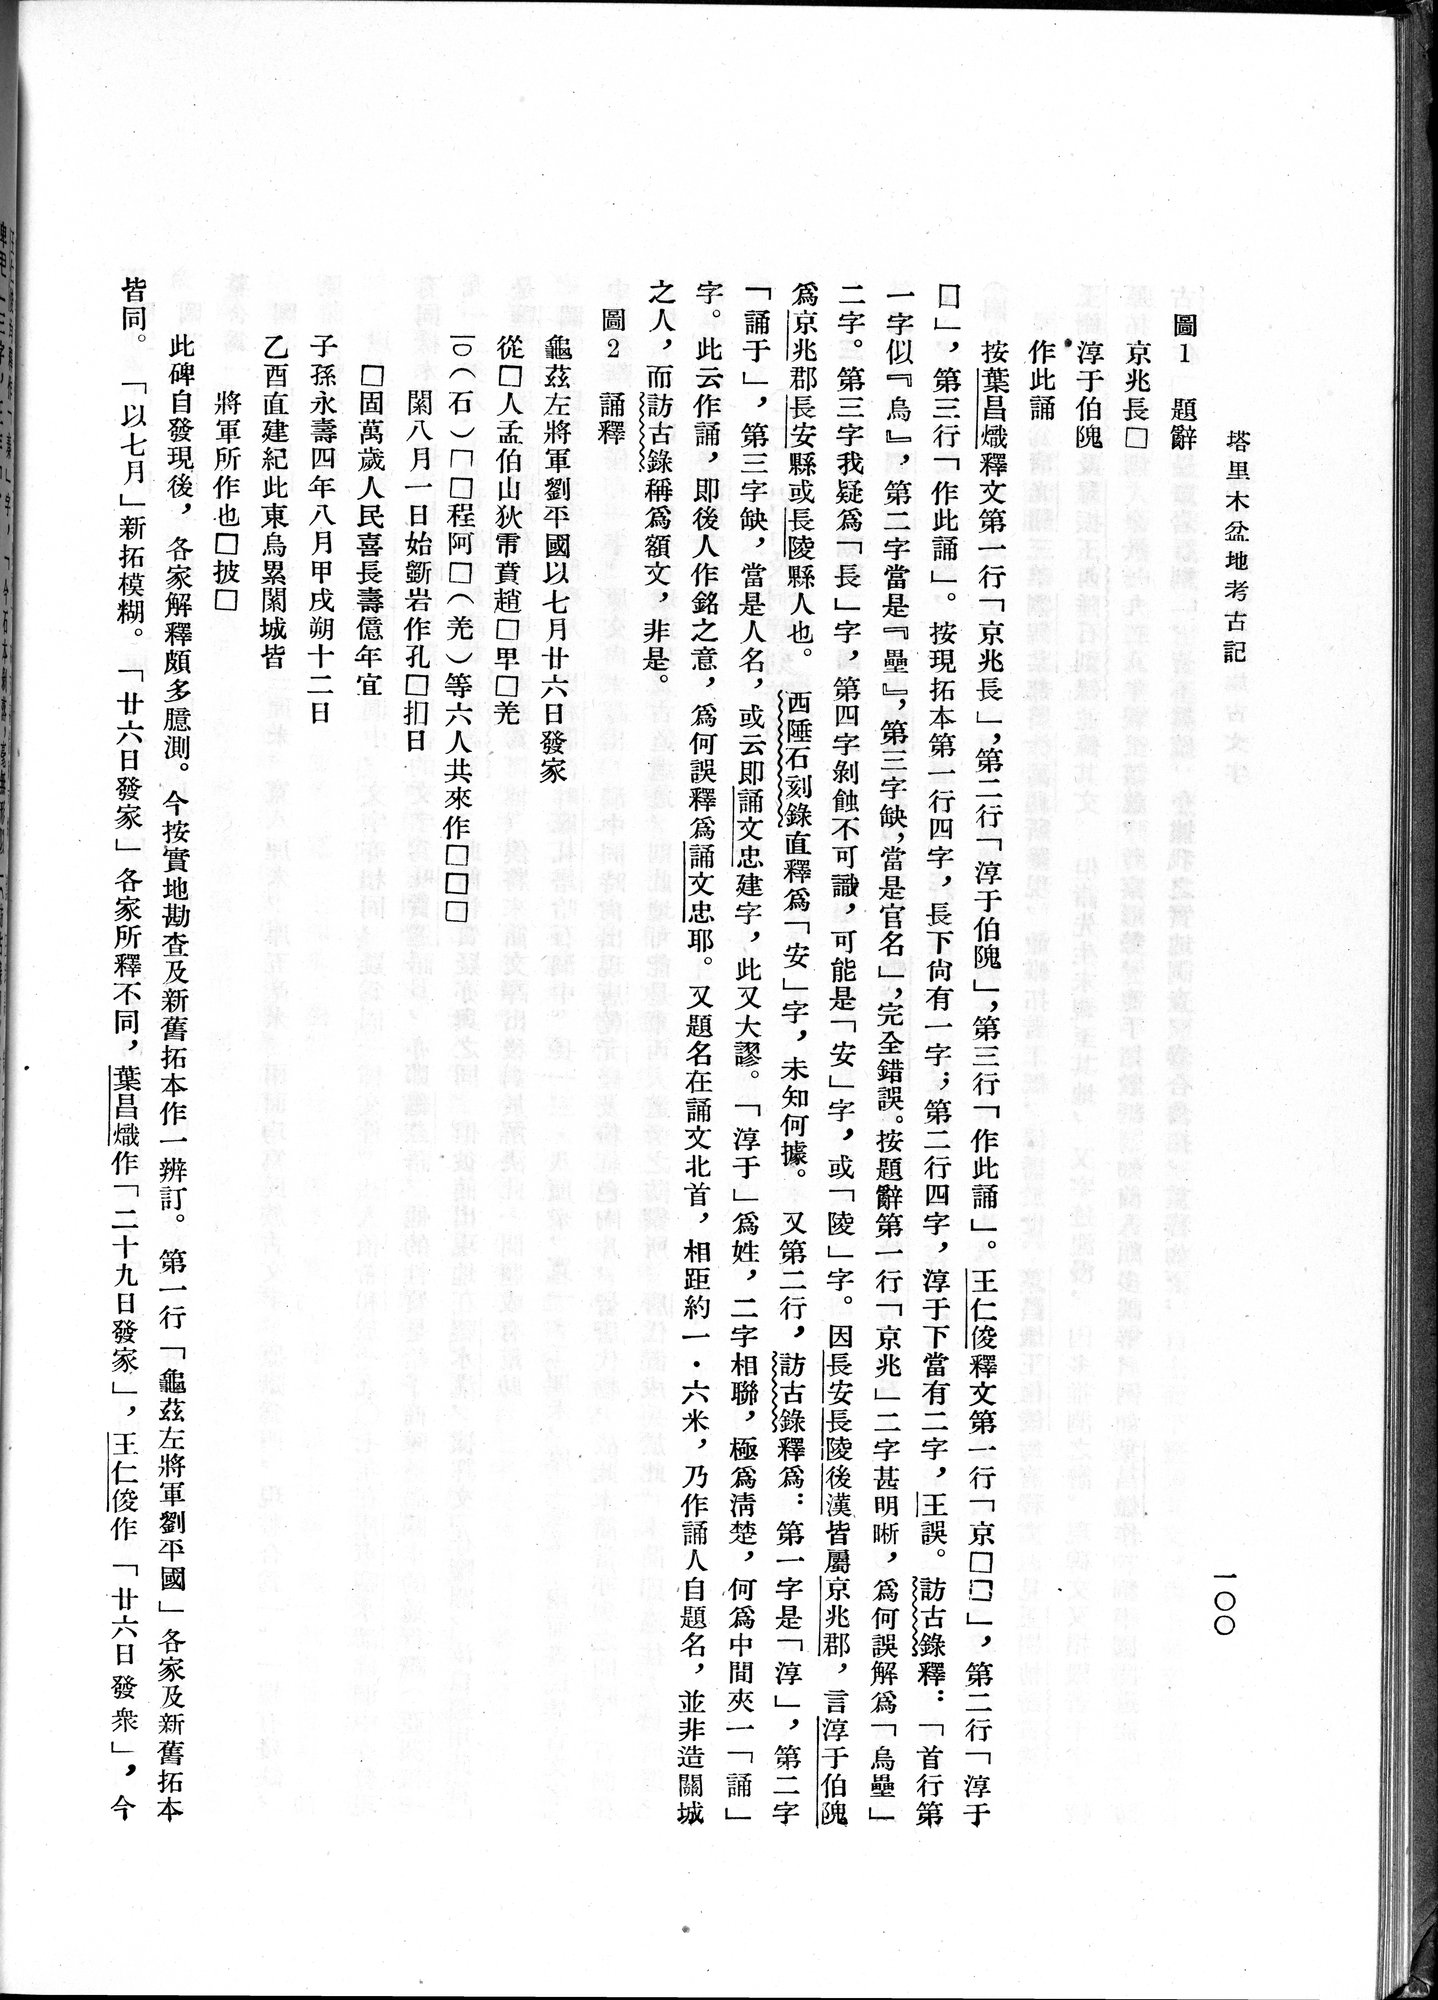 塔里木盆地考古記 : vol.1 / Page 164 (Grayscale High Resolution Image)